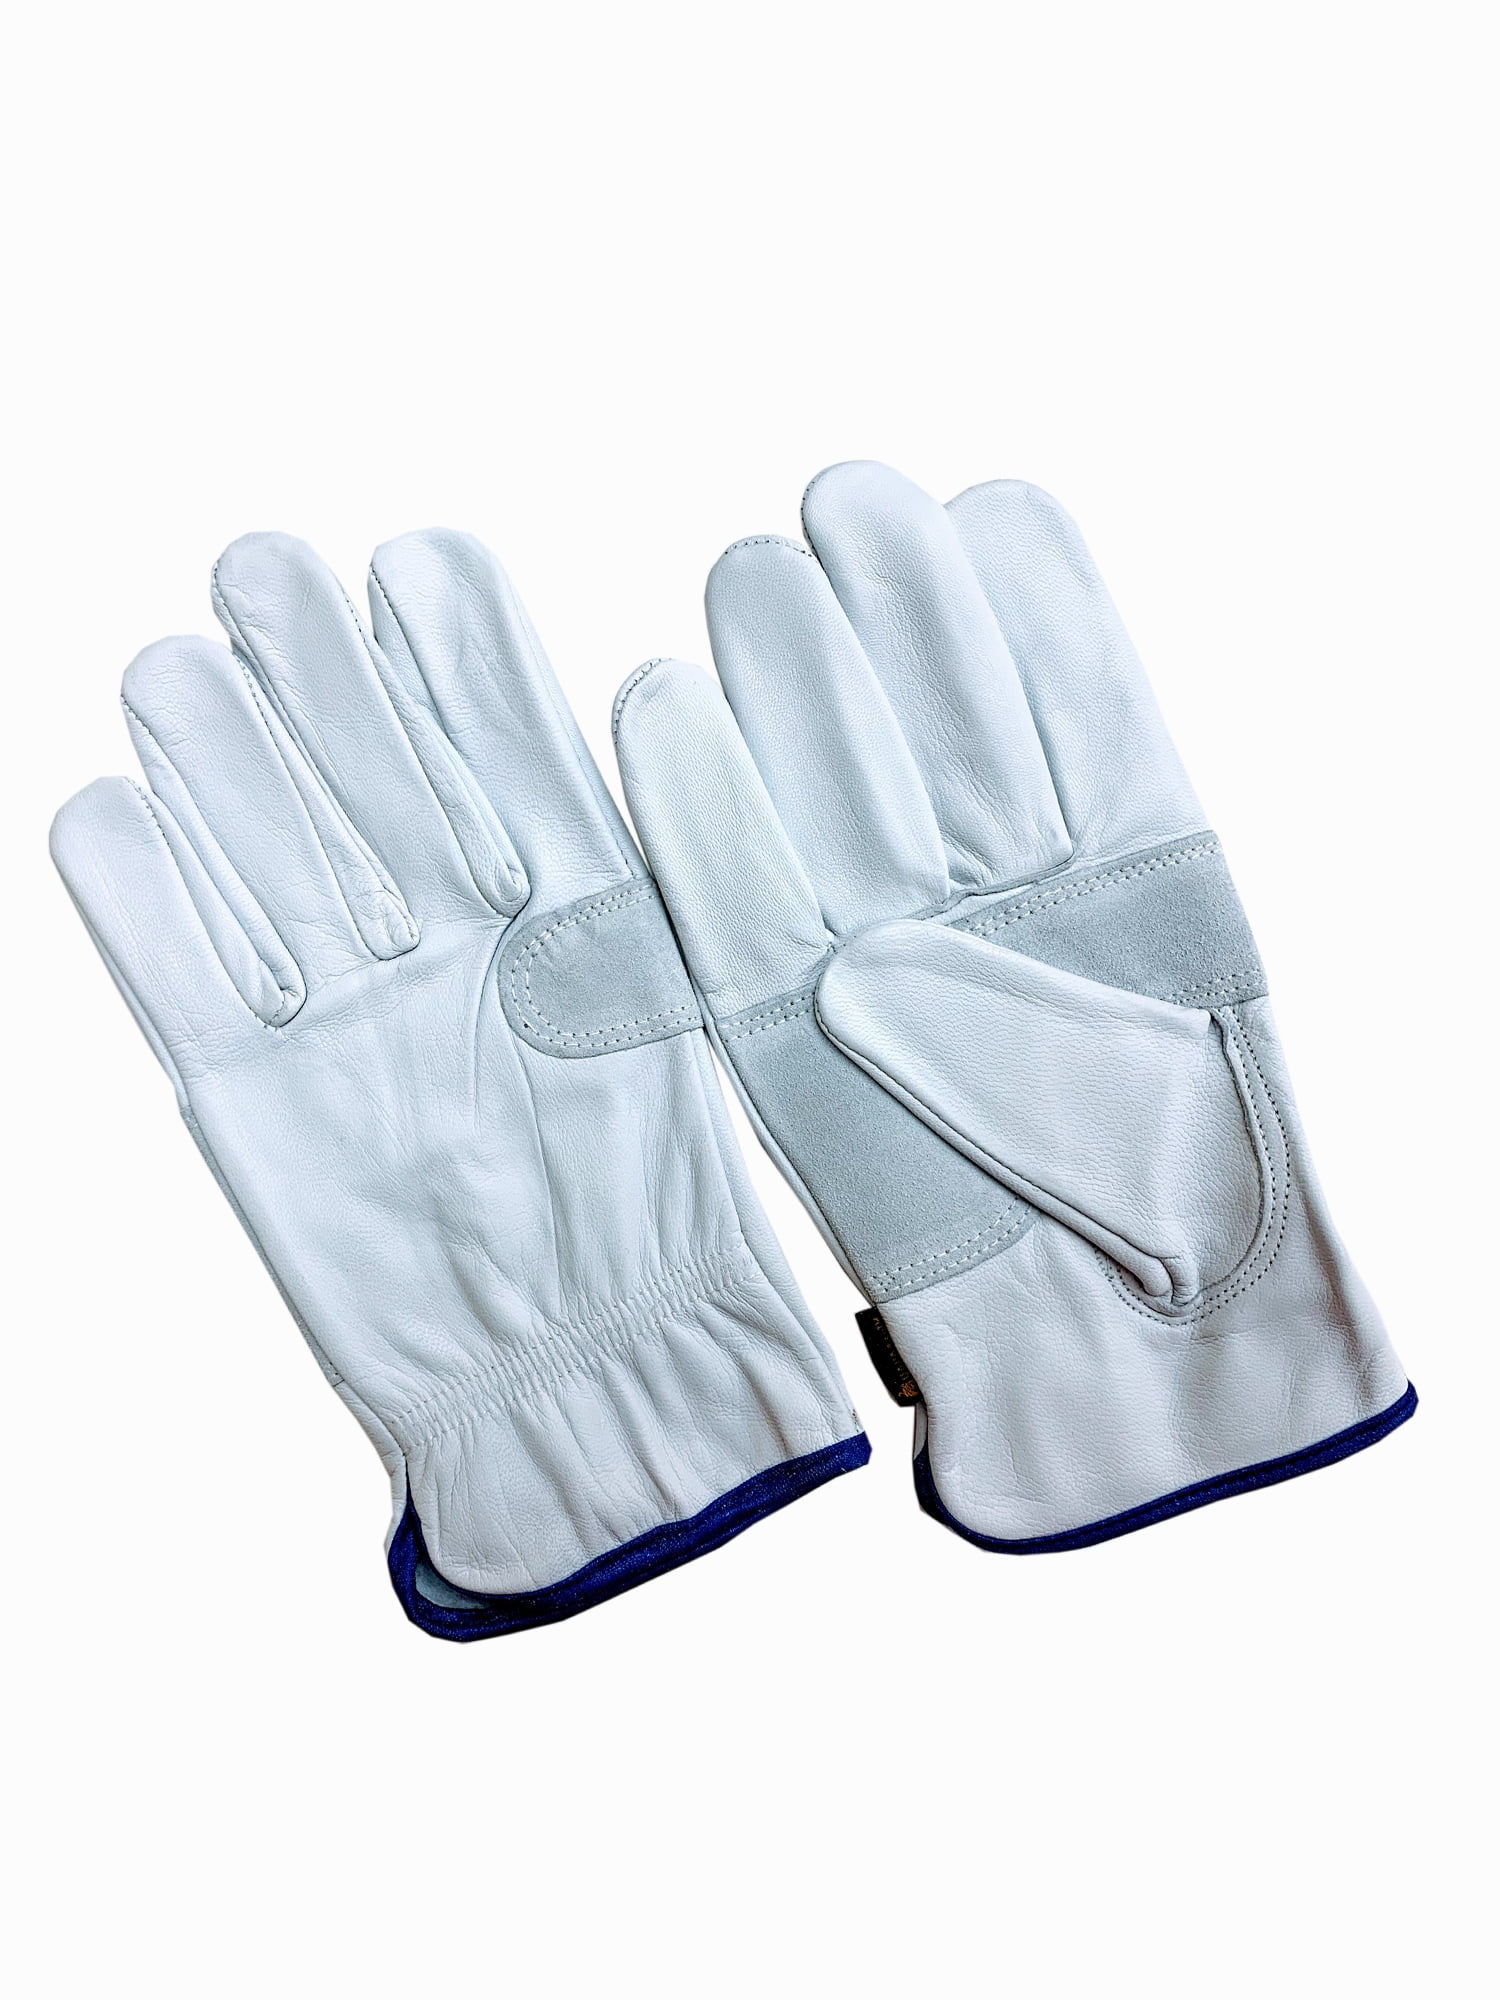 Premium Goatskin Leather Work Gloves Sold by Dozen 